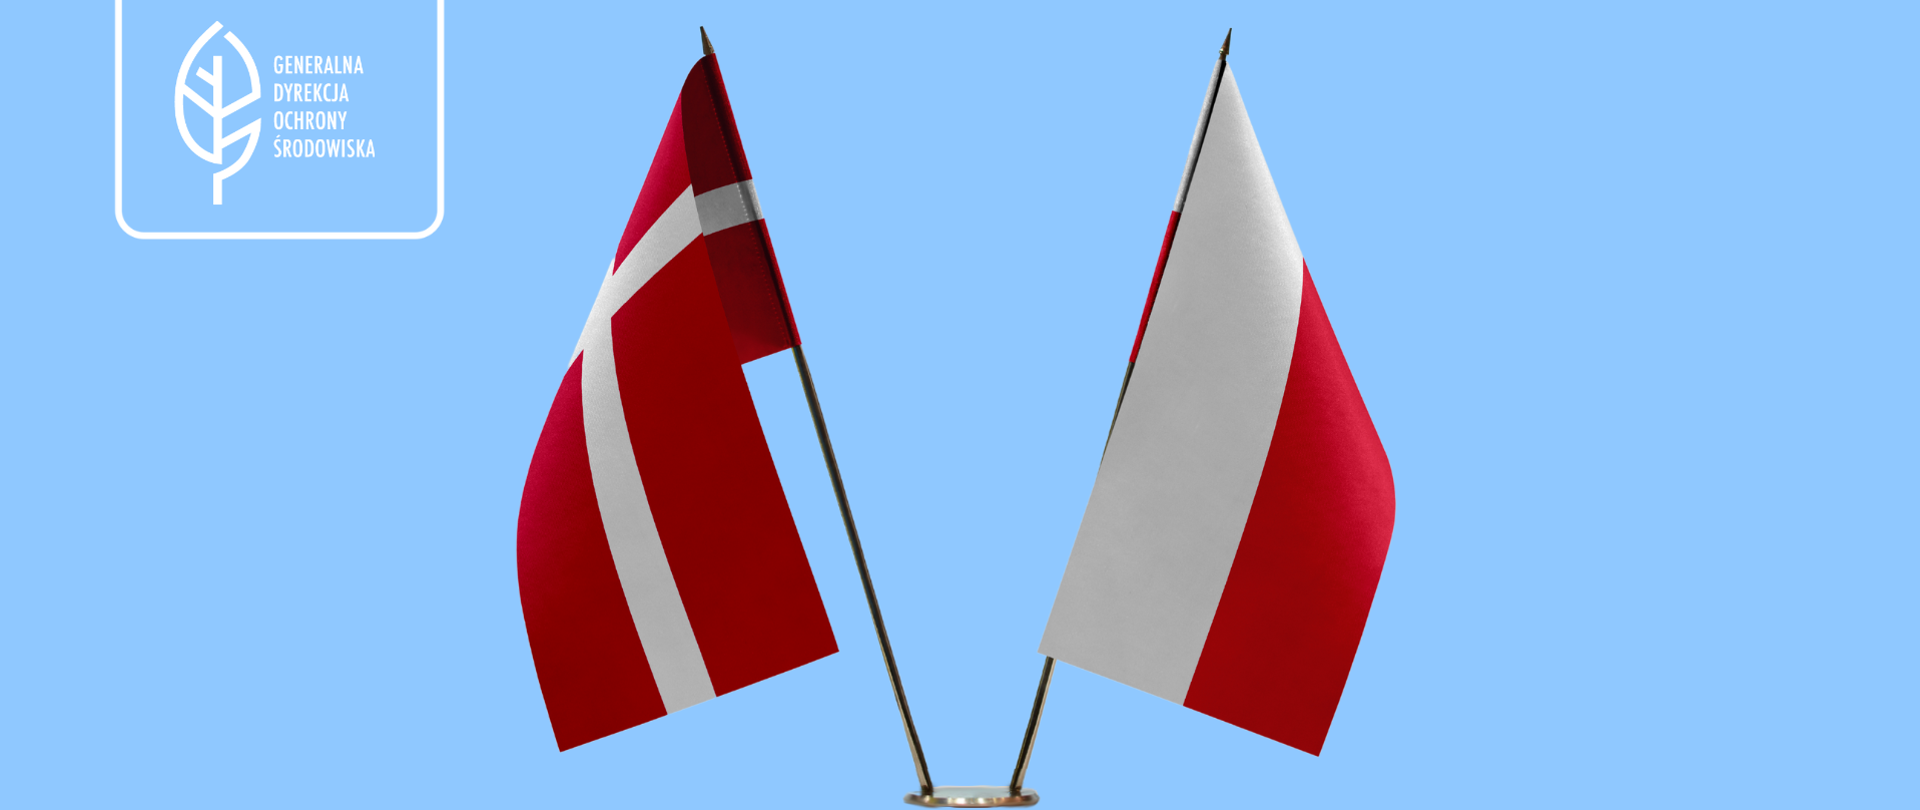 Na niebieskim na stojaku postawione są dwie flagi: Polski i Danii (obie w kolorach białym i czerwonym).
W prawym górnym rogu logotyp Generalnej Dyrekcji Ochrony Środowiska (biały liść).